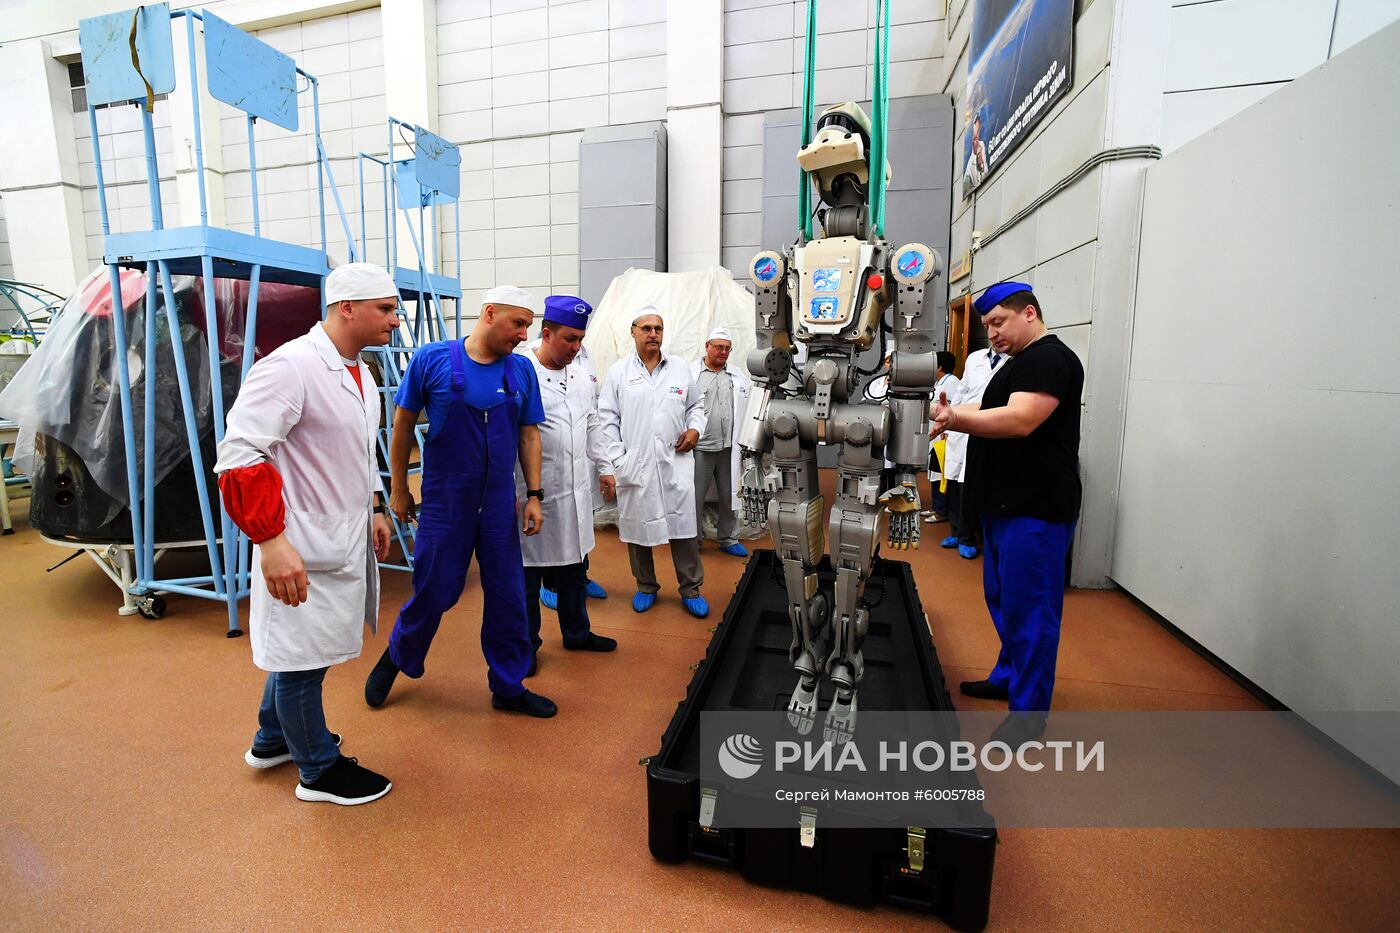 Робот "Федор" после полета на МКС